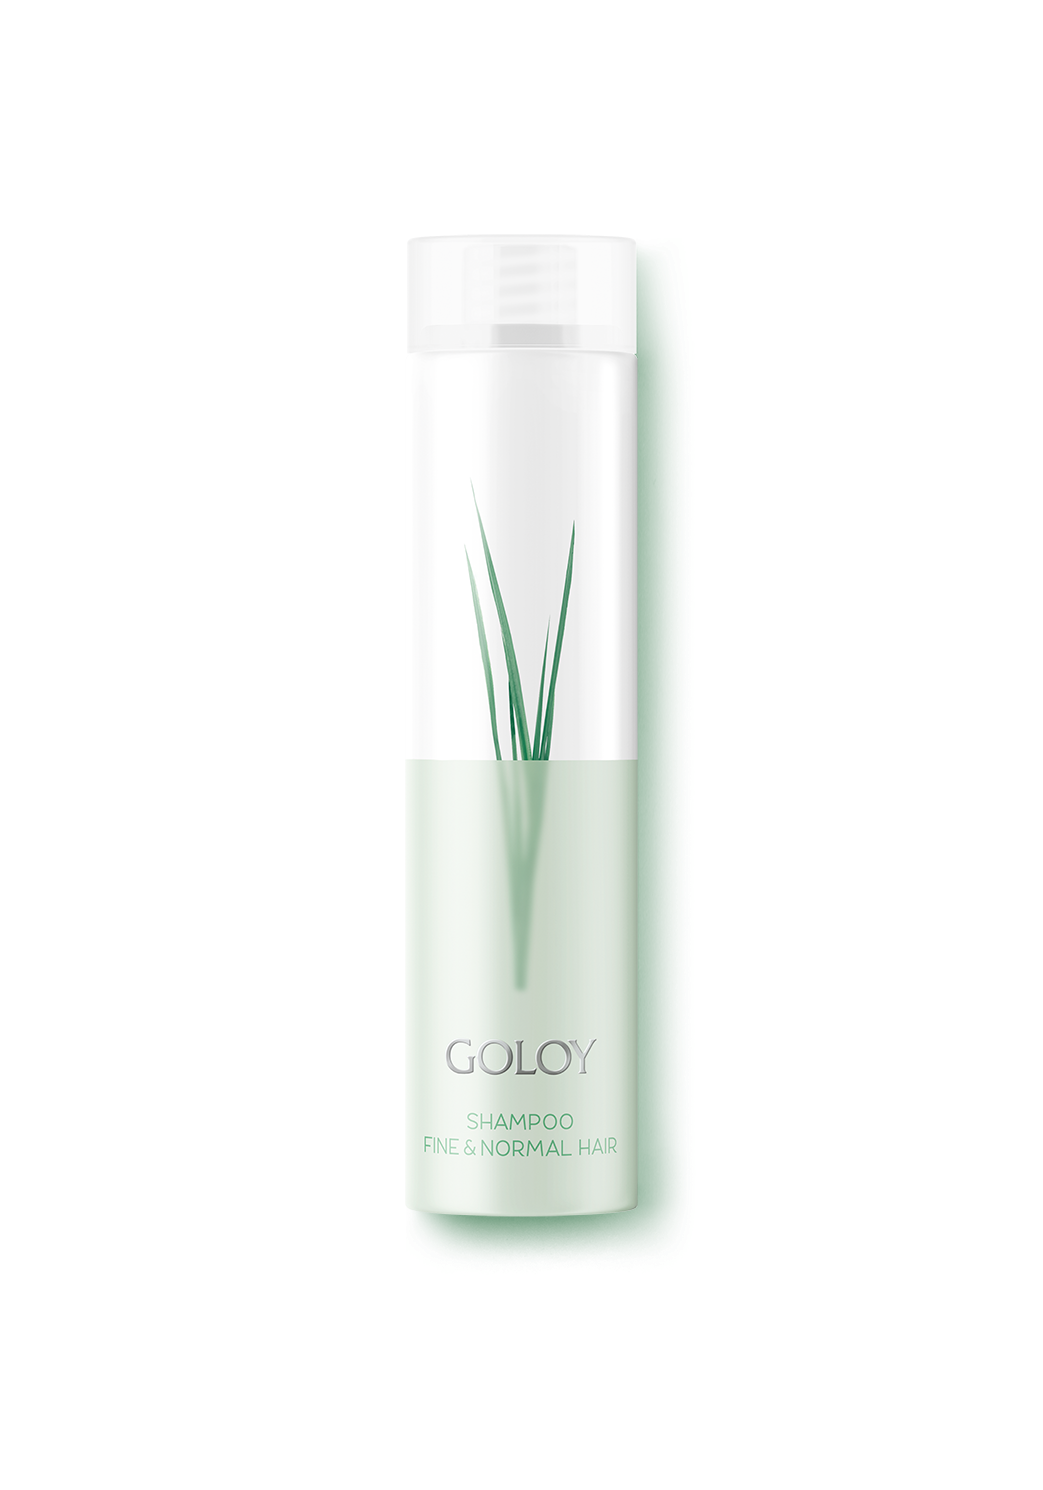 Packshot GOLOY Shampoo Fine & Normal Hair